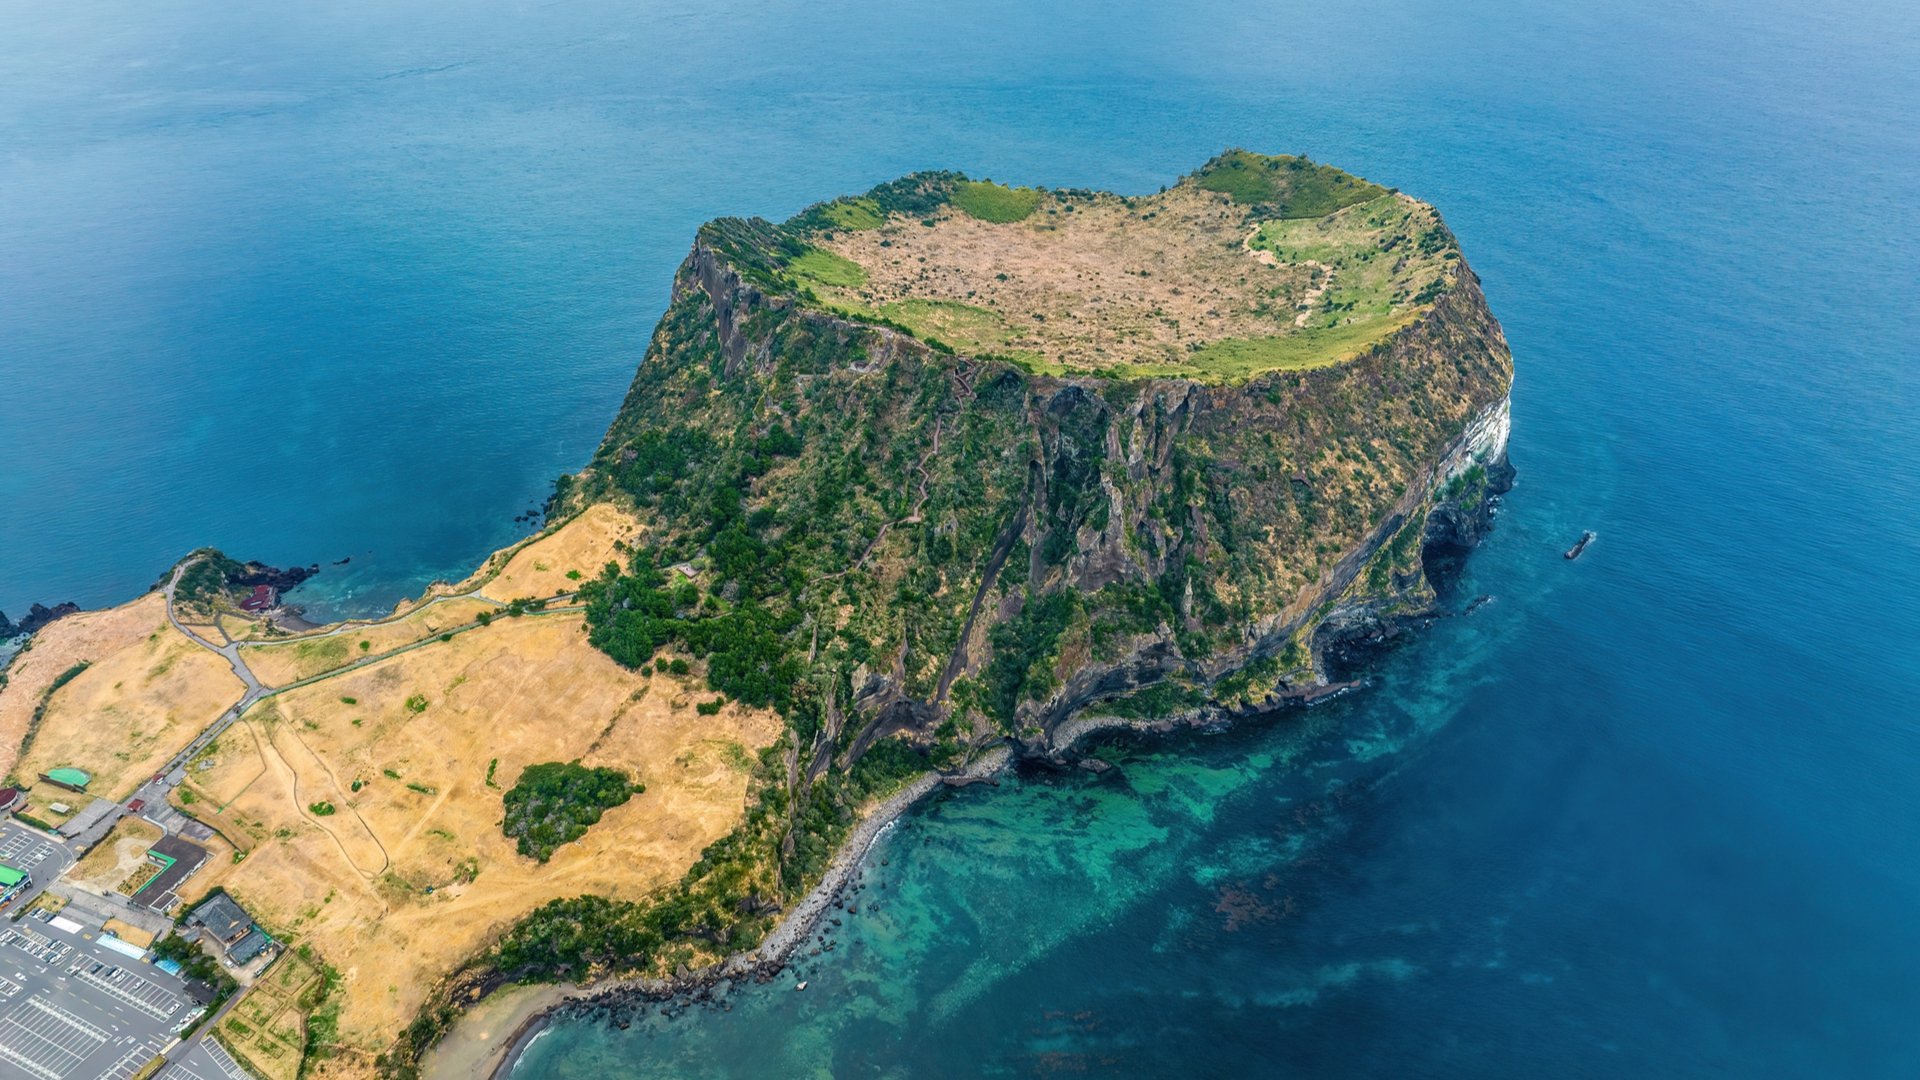 Conheça as 7 maravilhas naturais do mundo | Ilha de Jeju | Conexão123